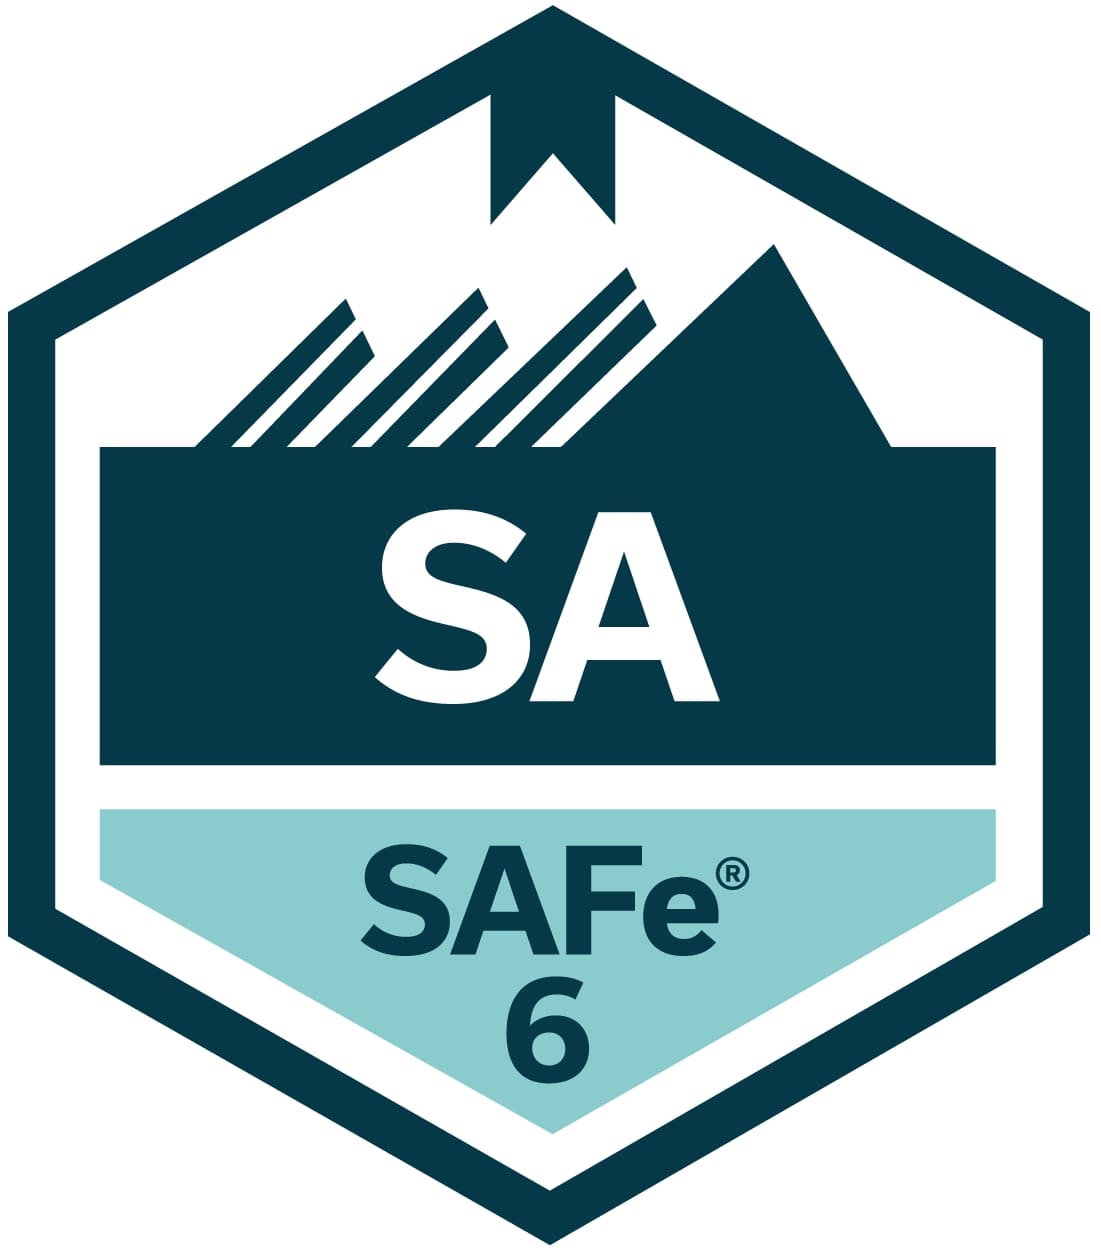 Formation Leading SAFe 6